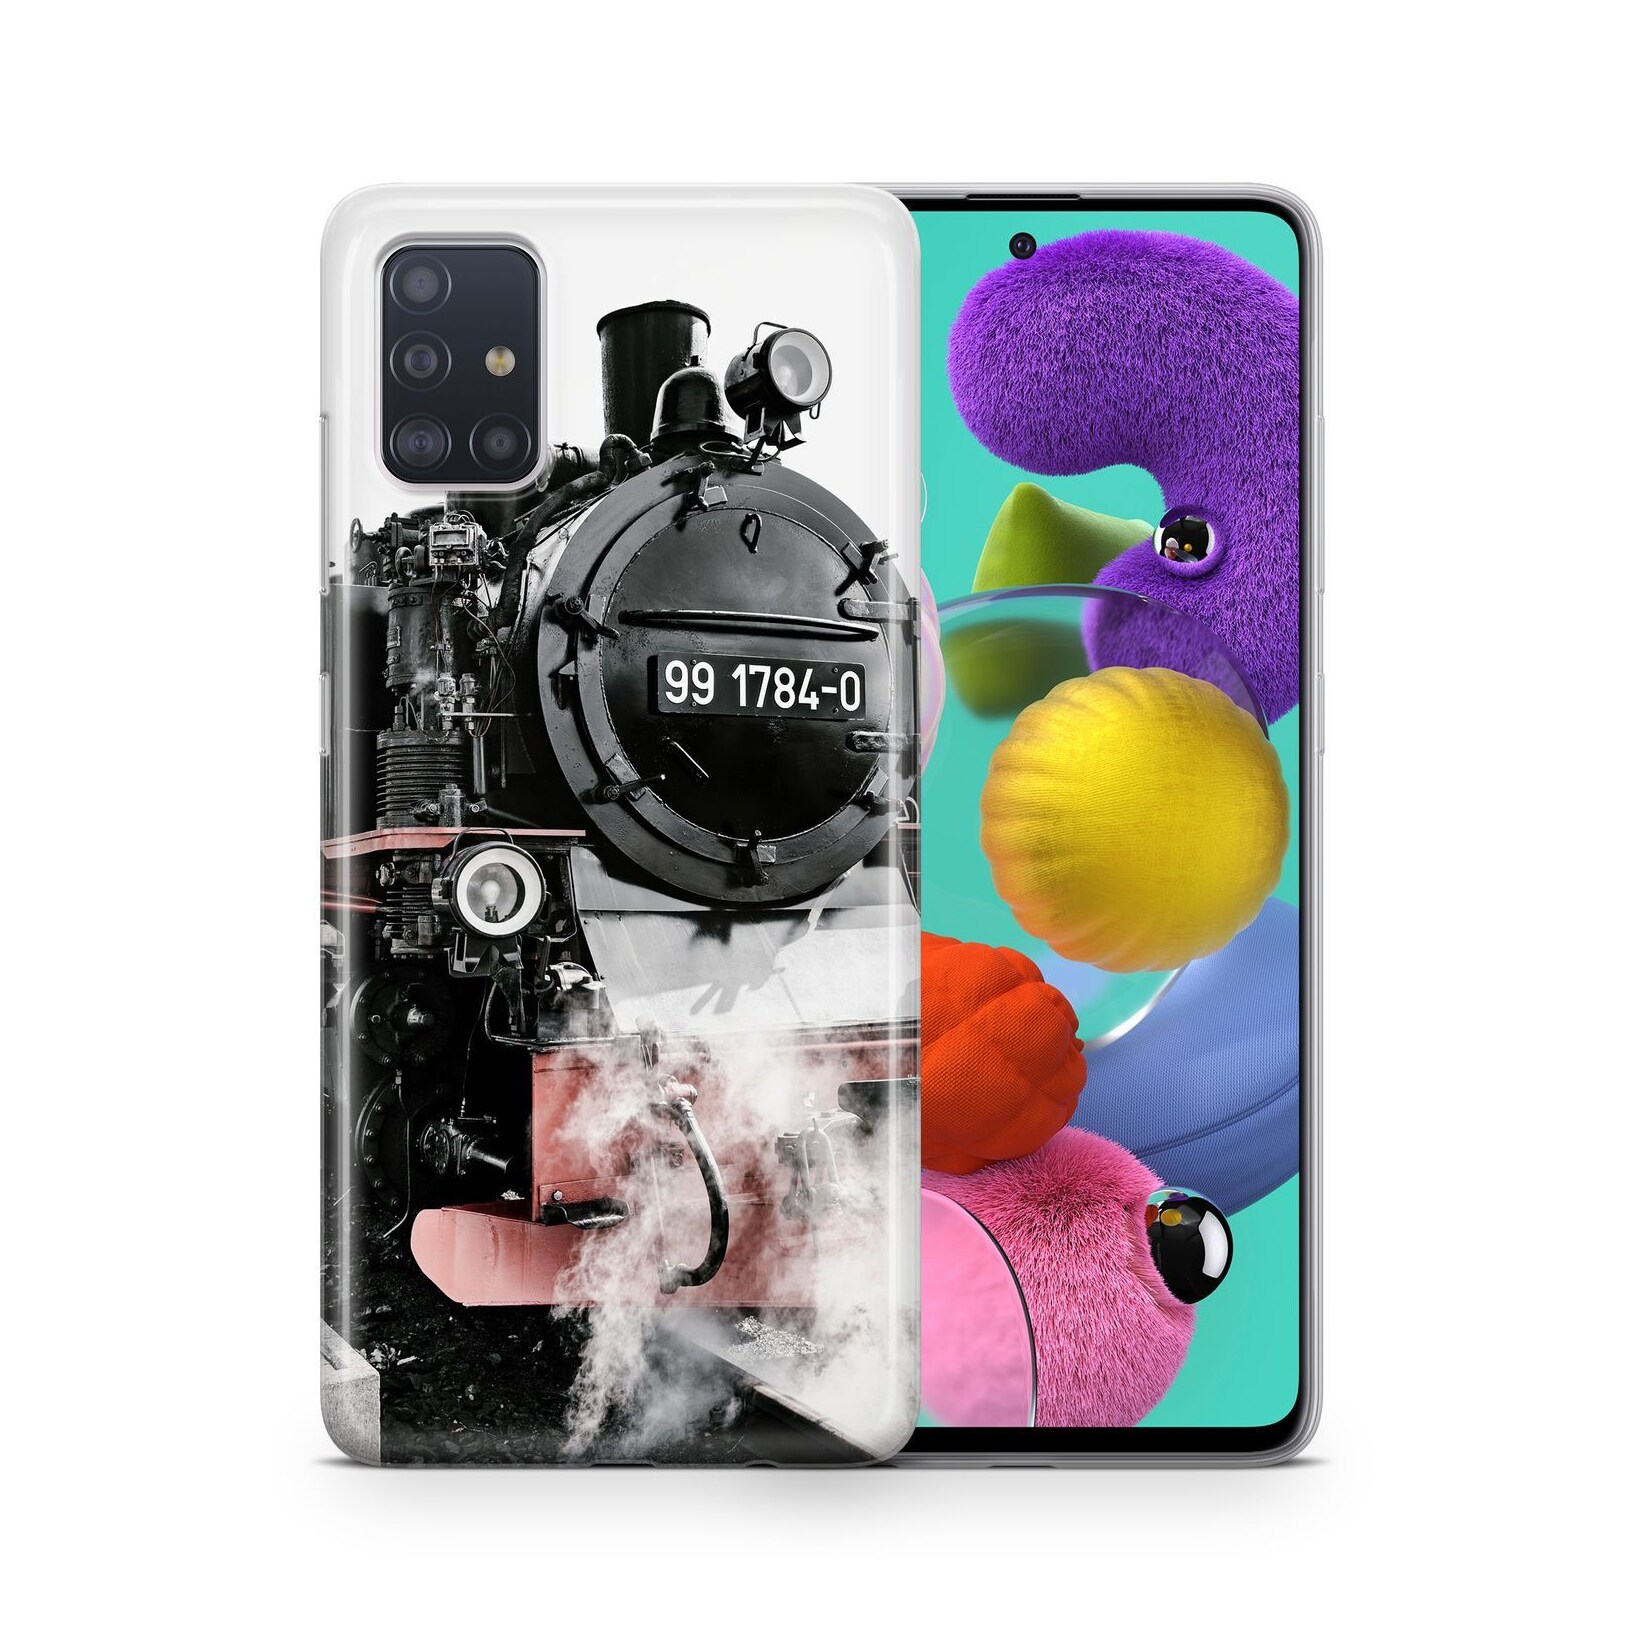 Hülle Handy Schutz für Huawei P10 Plus Case Cover Tasche Bumper Etuis TPU Motiv